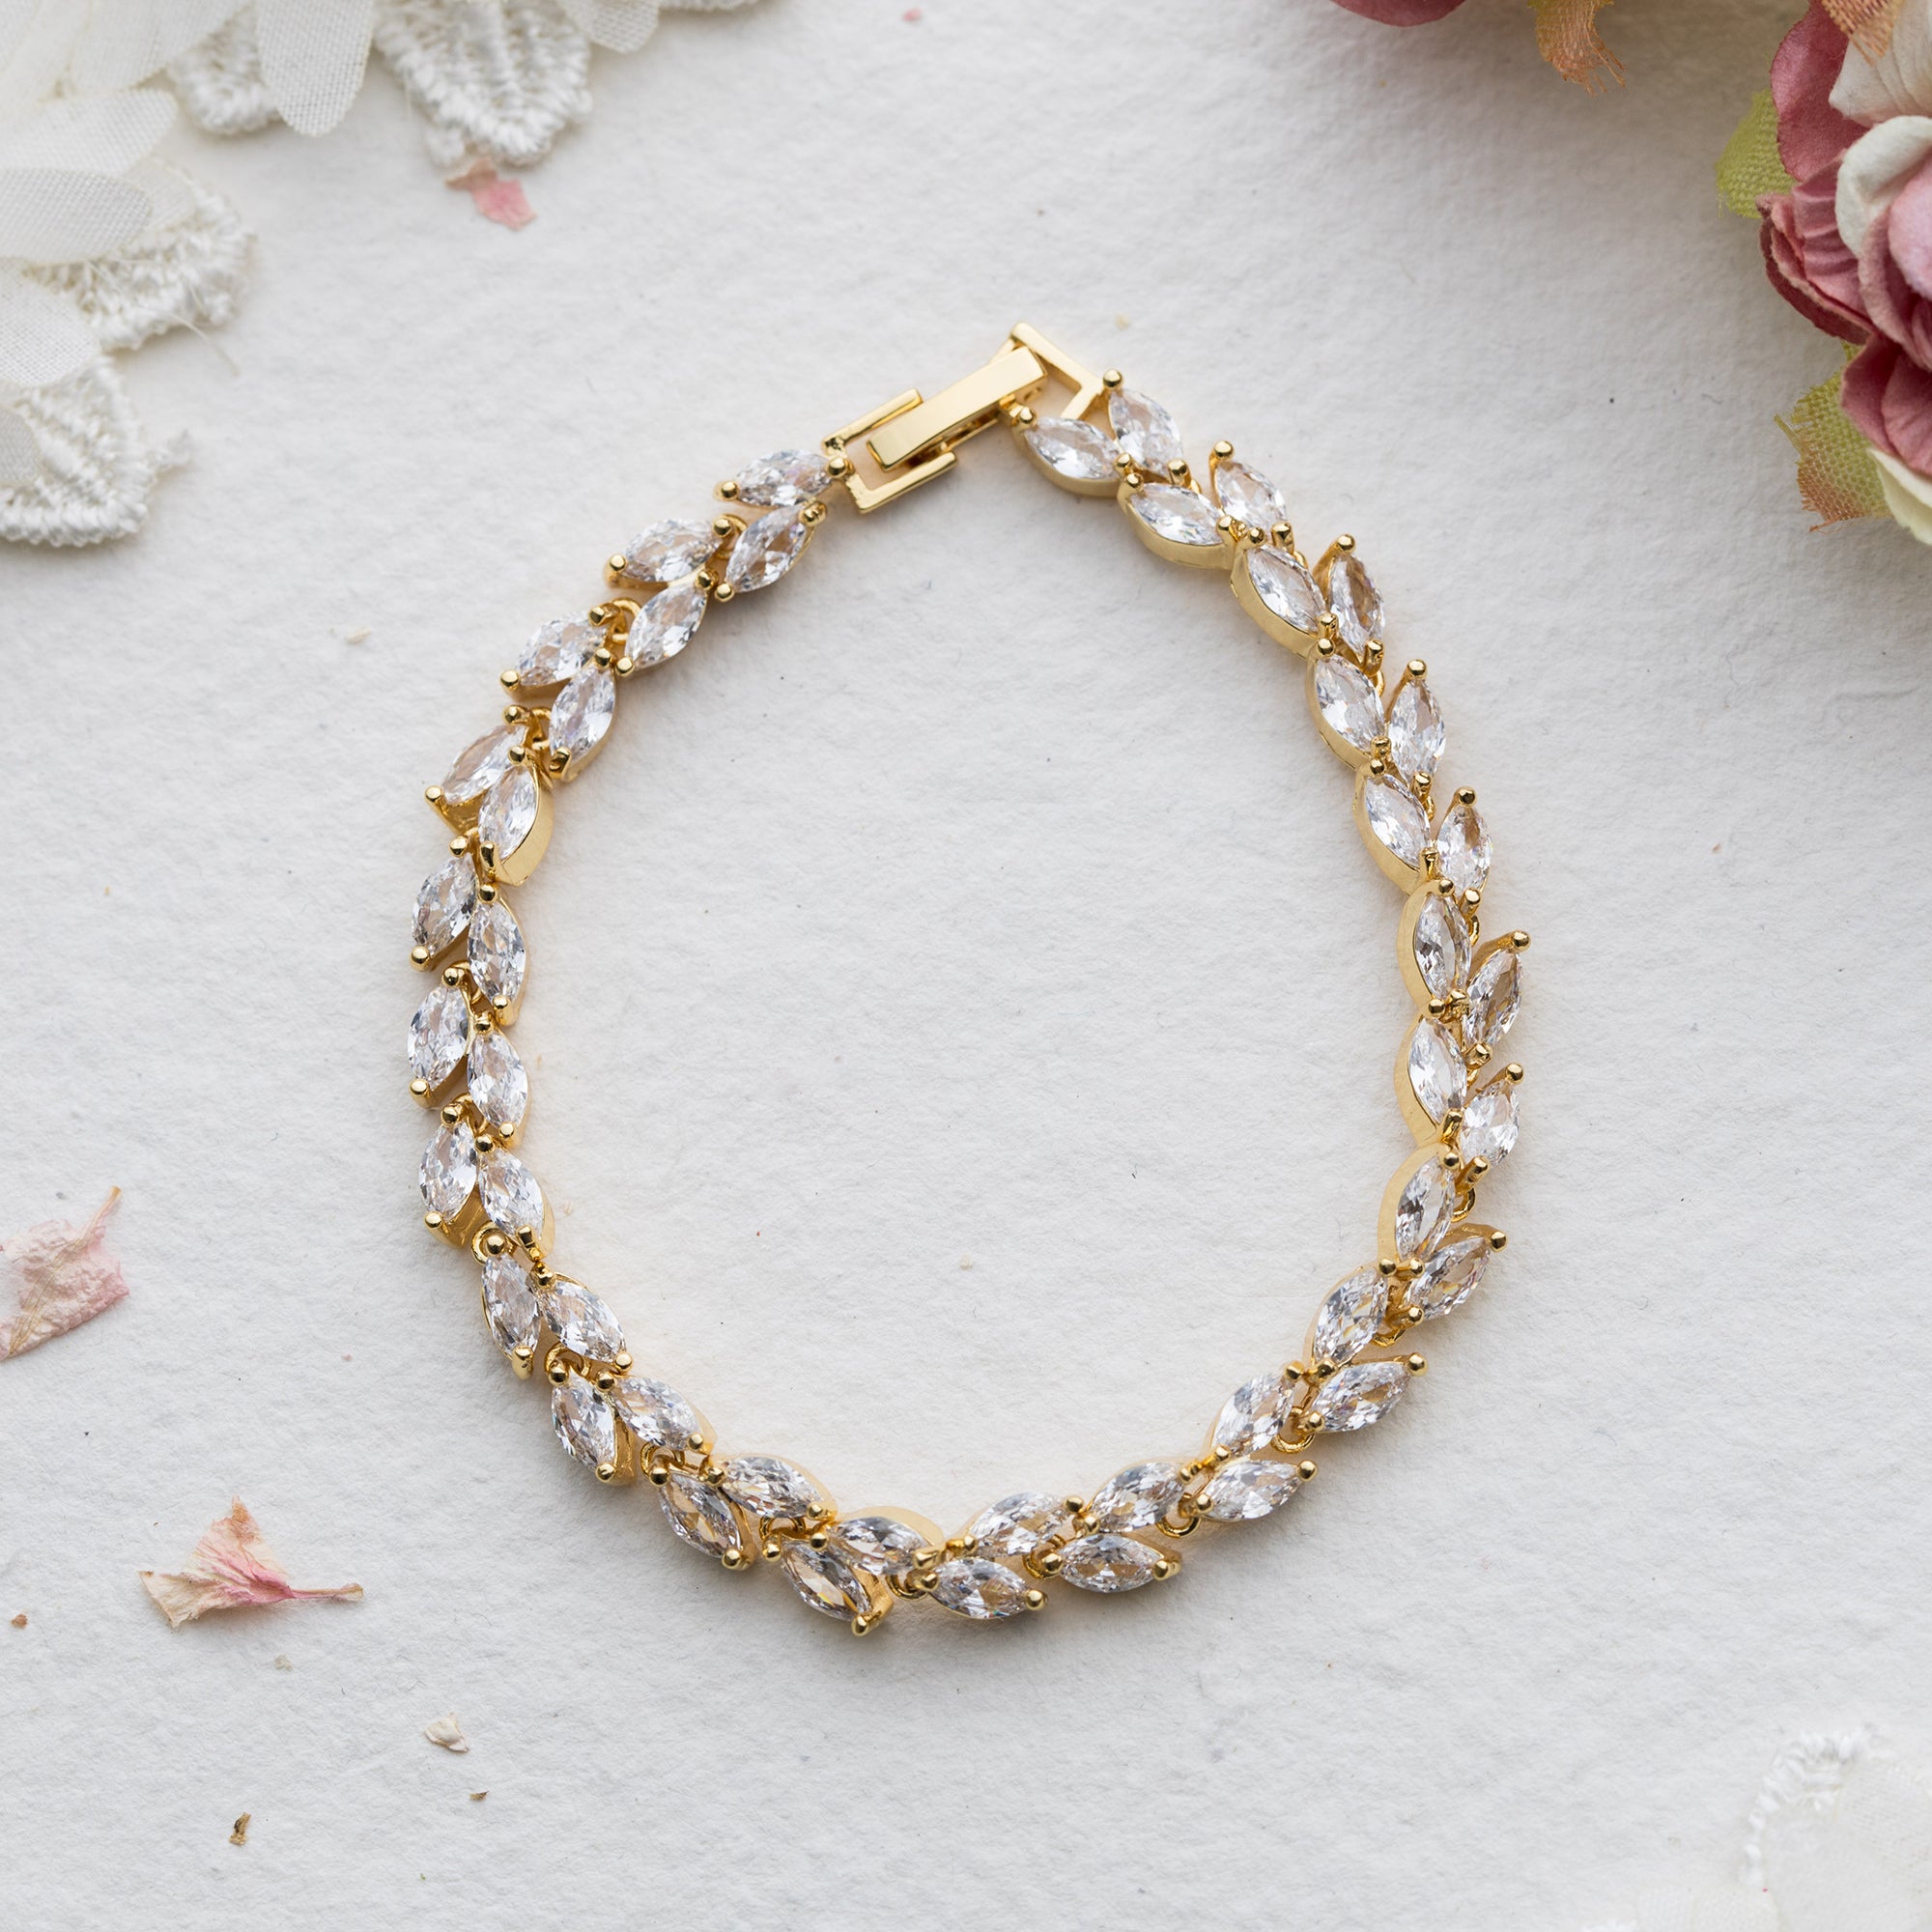 Etienne gold crystal bracelet